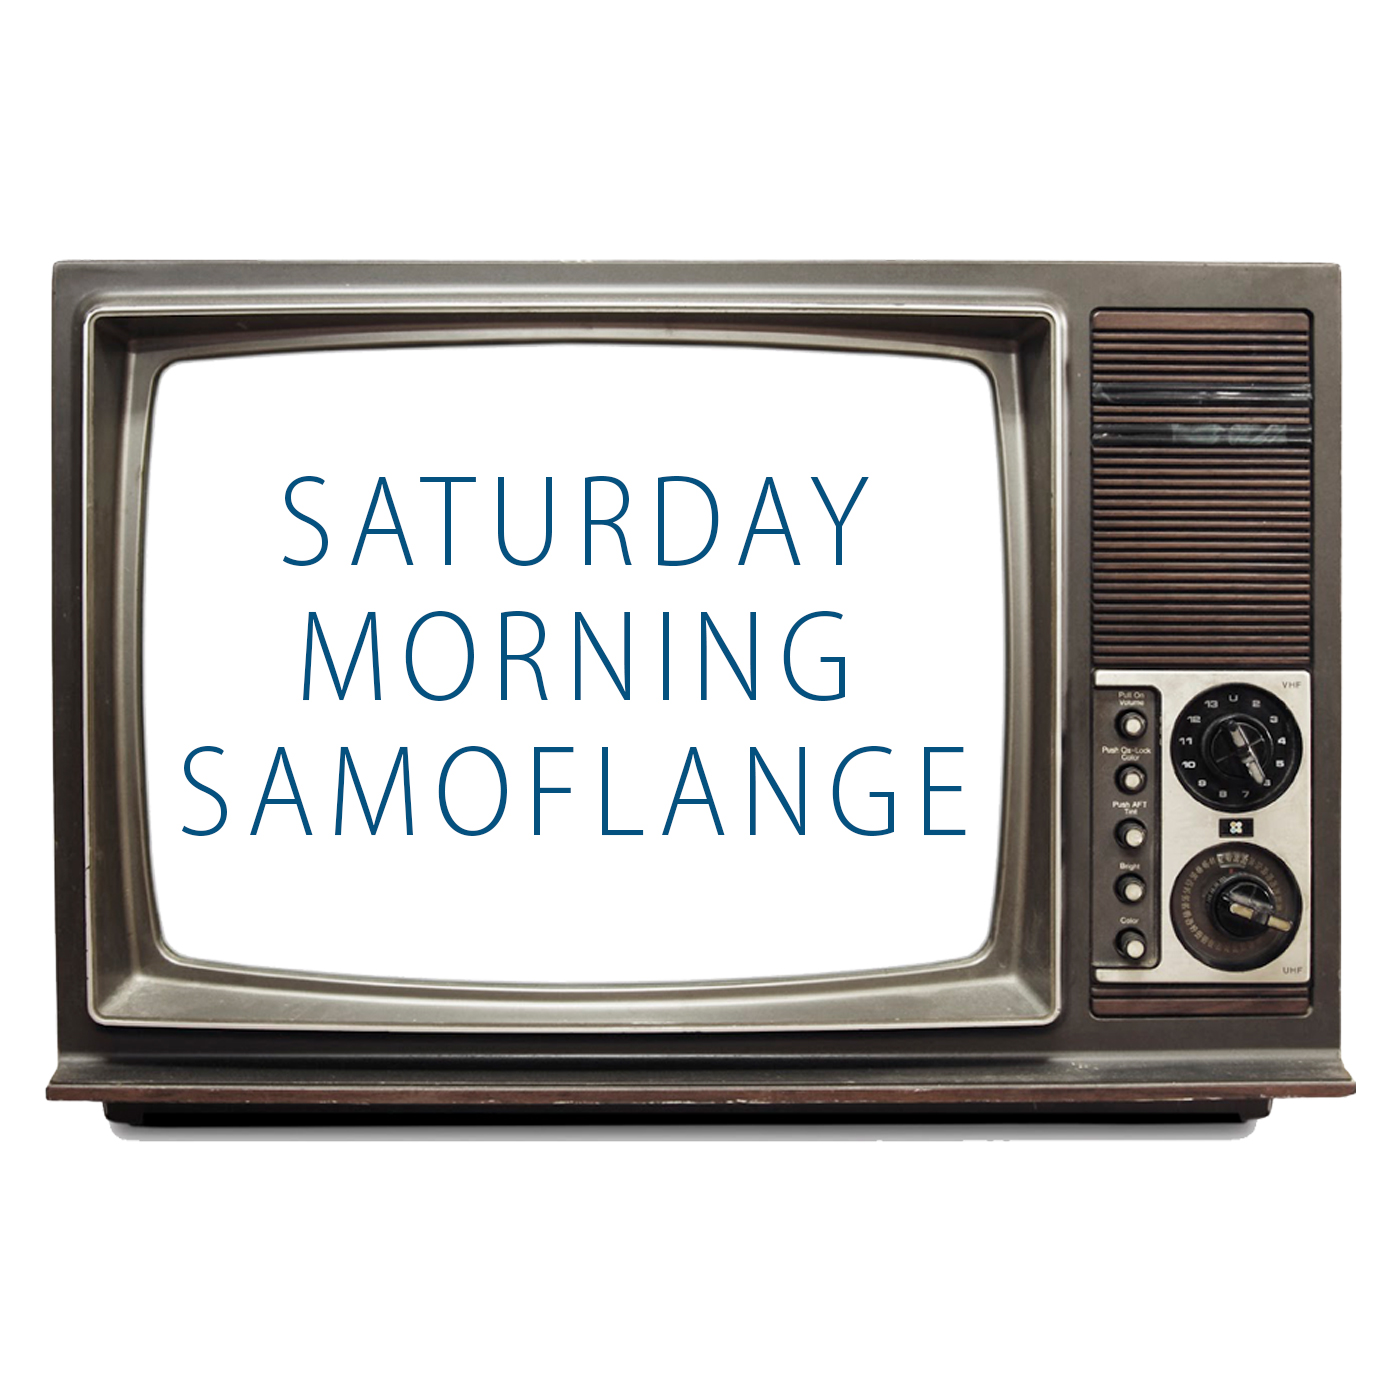 Saturday Morning Samoflange